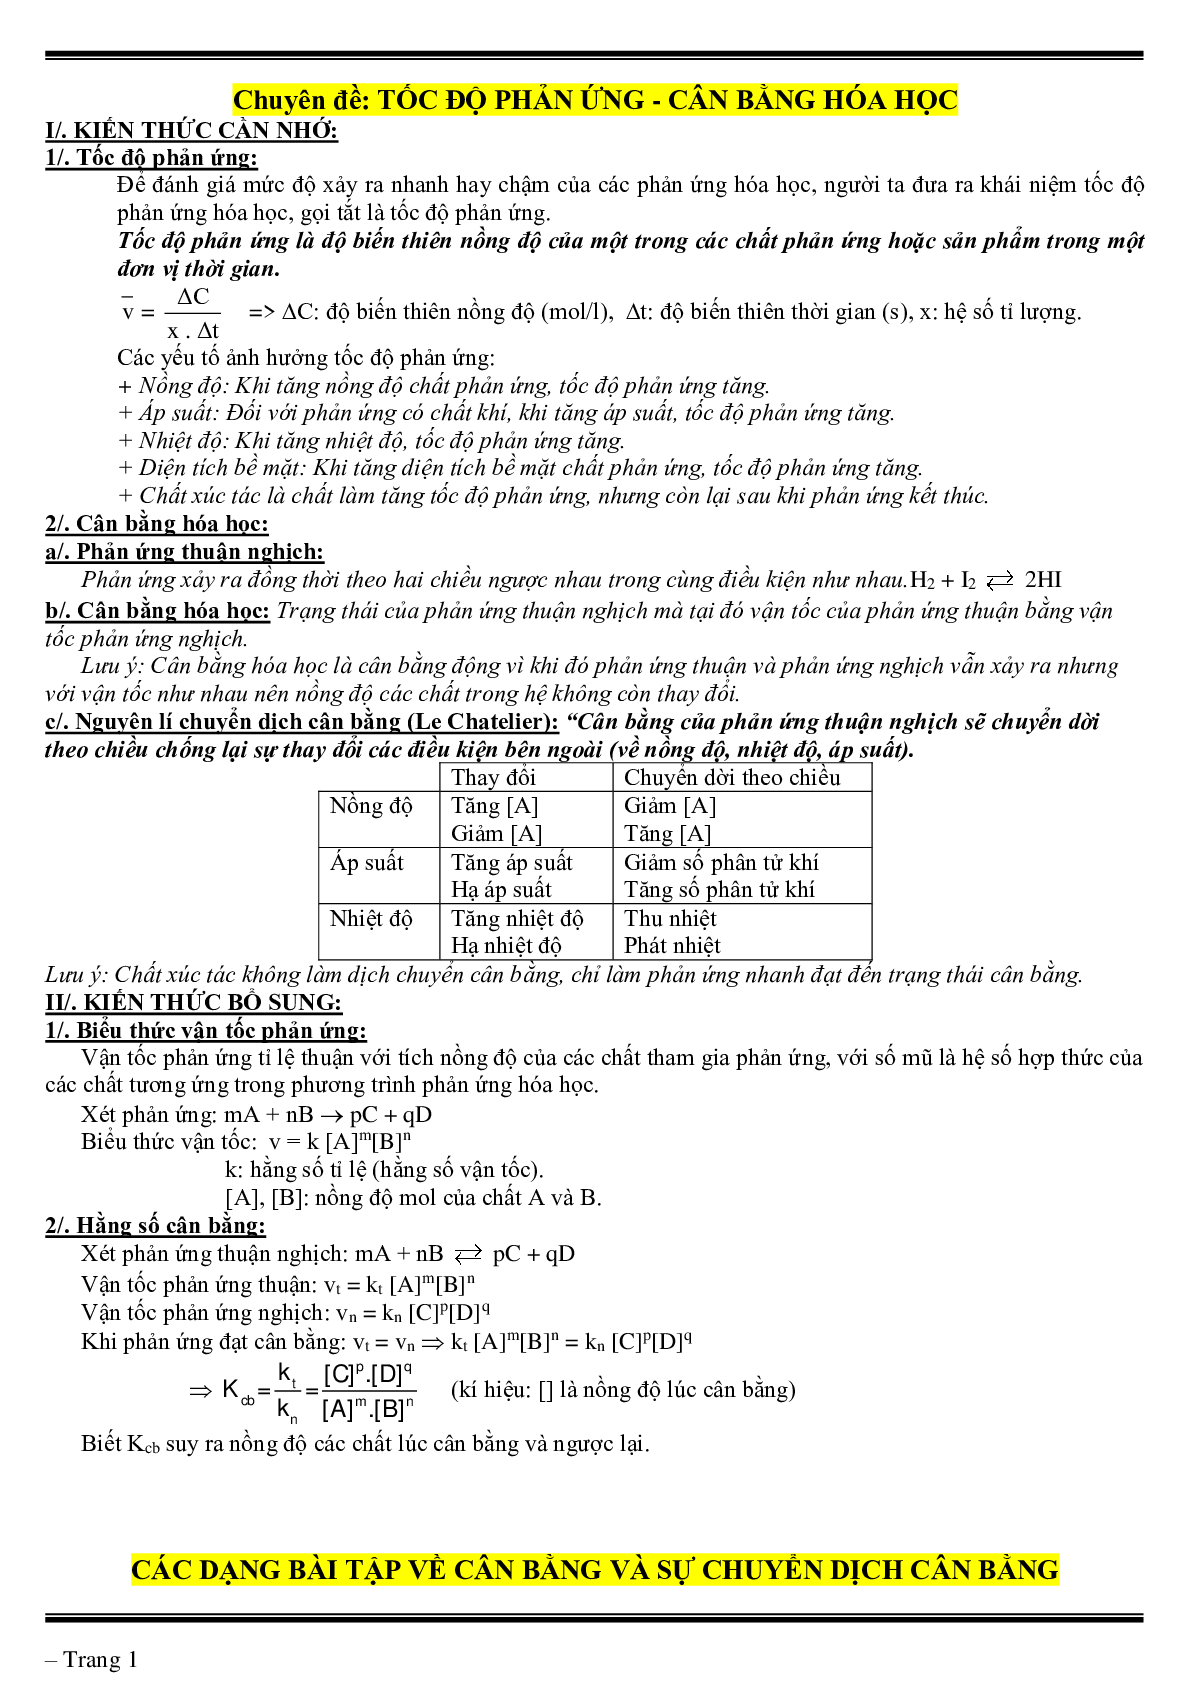 Lý thuyết, bài tập về tốc độ phản ứng- cân bằng hóa học có đáp án (trang 1)